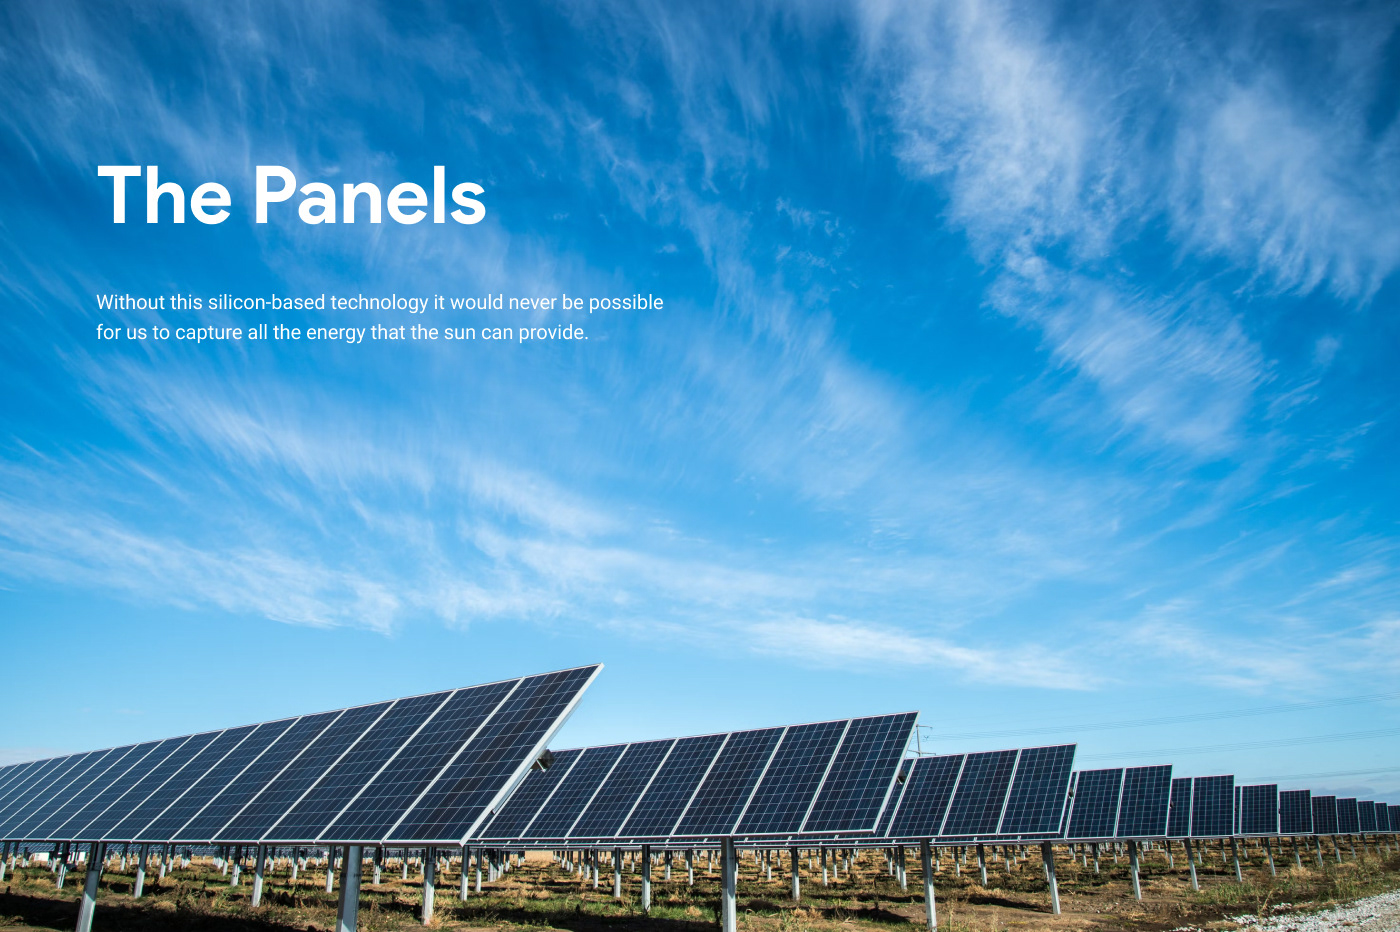 design Website UX design Energia Solar solar panel logo redesign